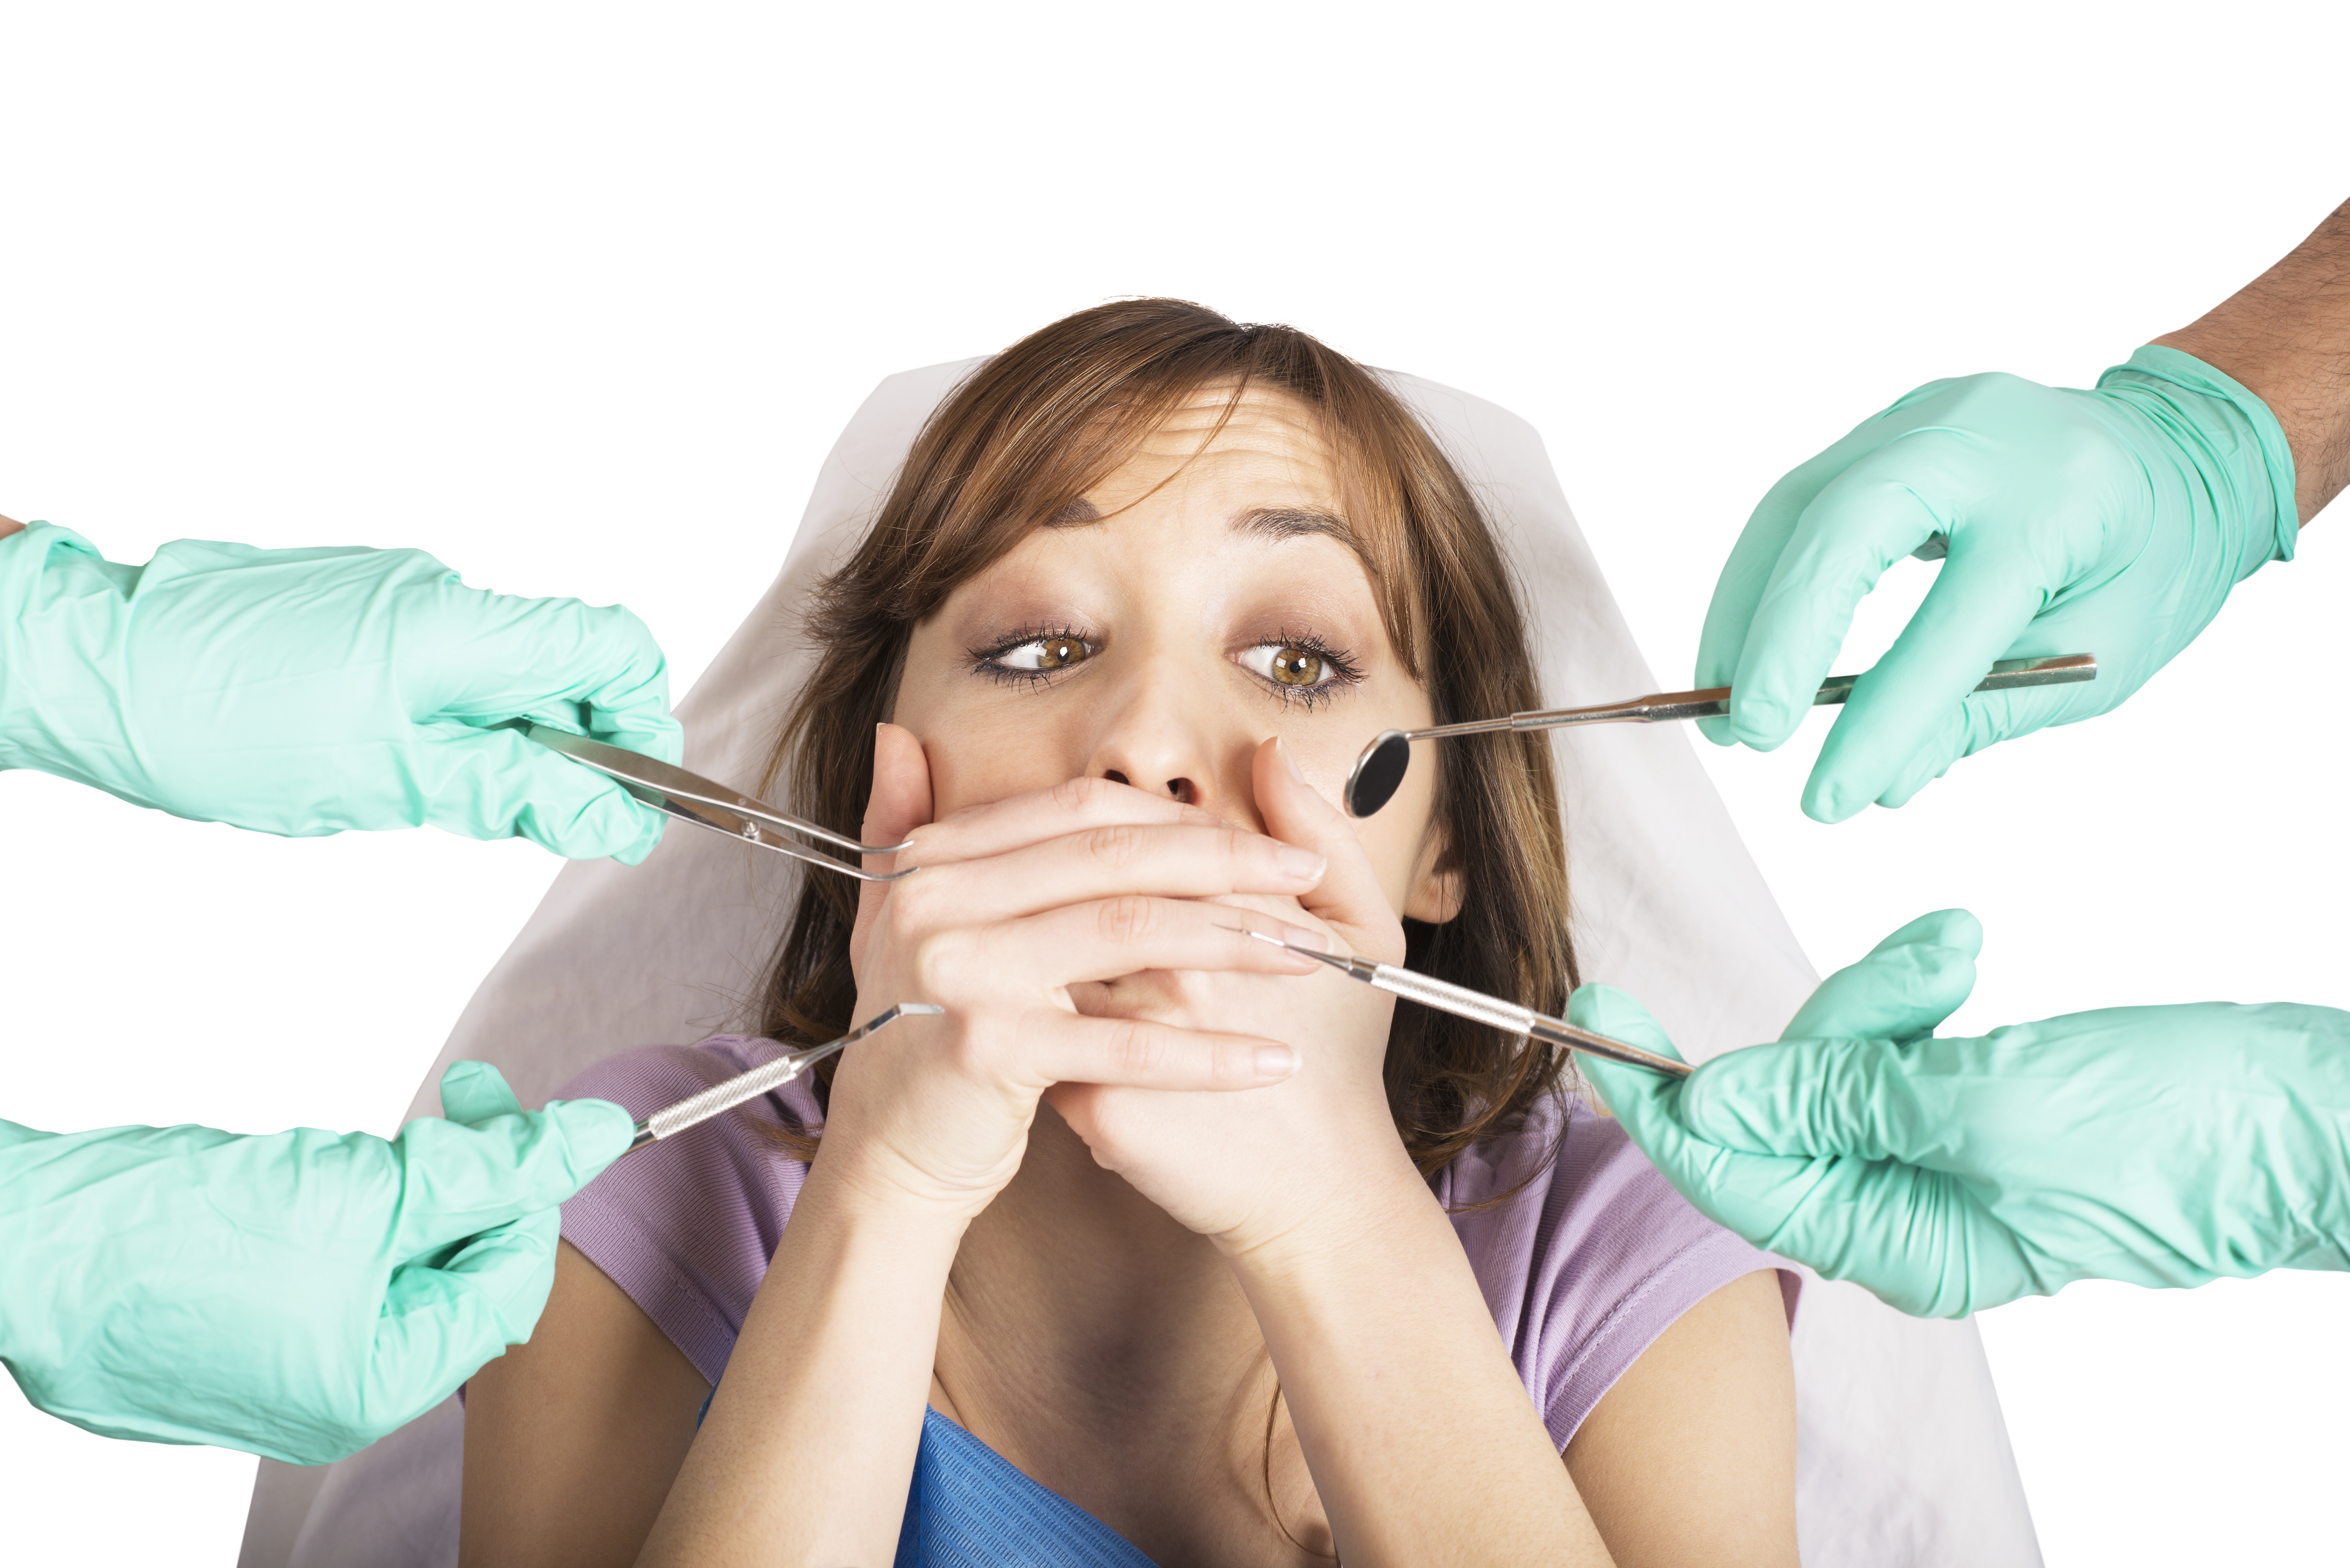 Descubre cómo puede ayudarte la sedación consciente a superar tu miedo al dentista.